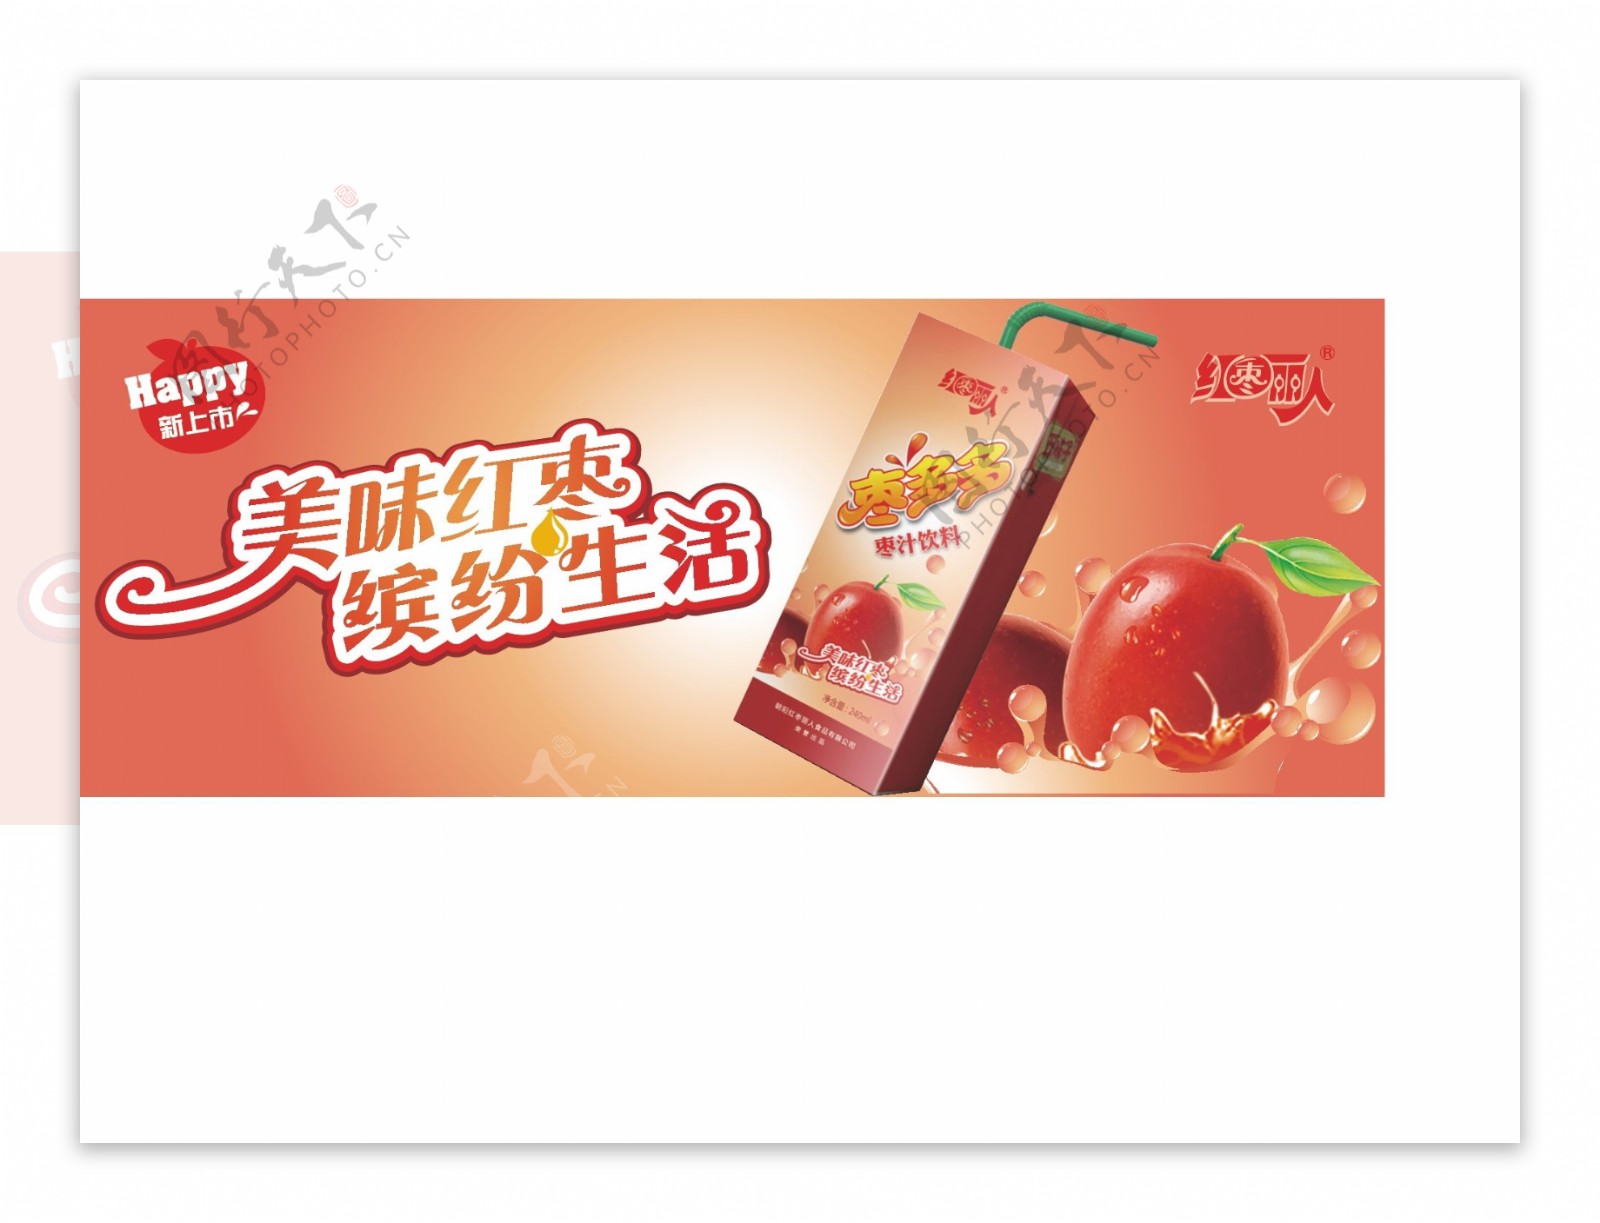 红枣饮料宣传淘宝设计